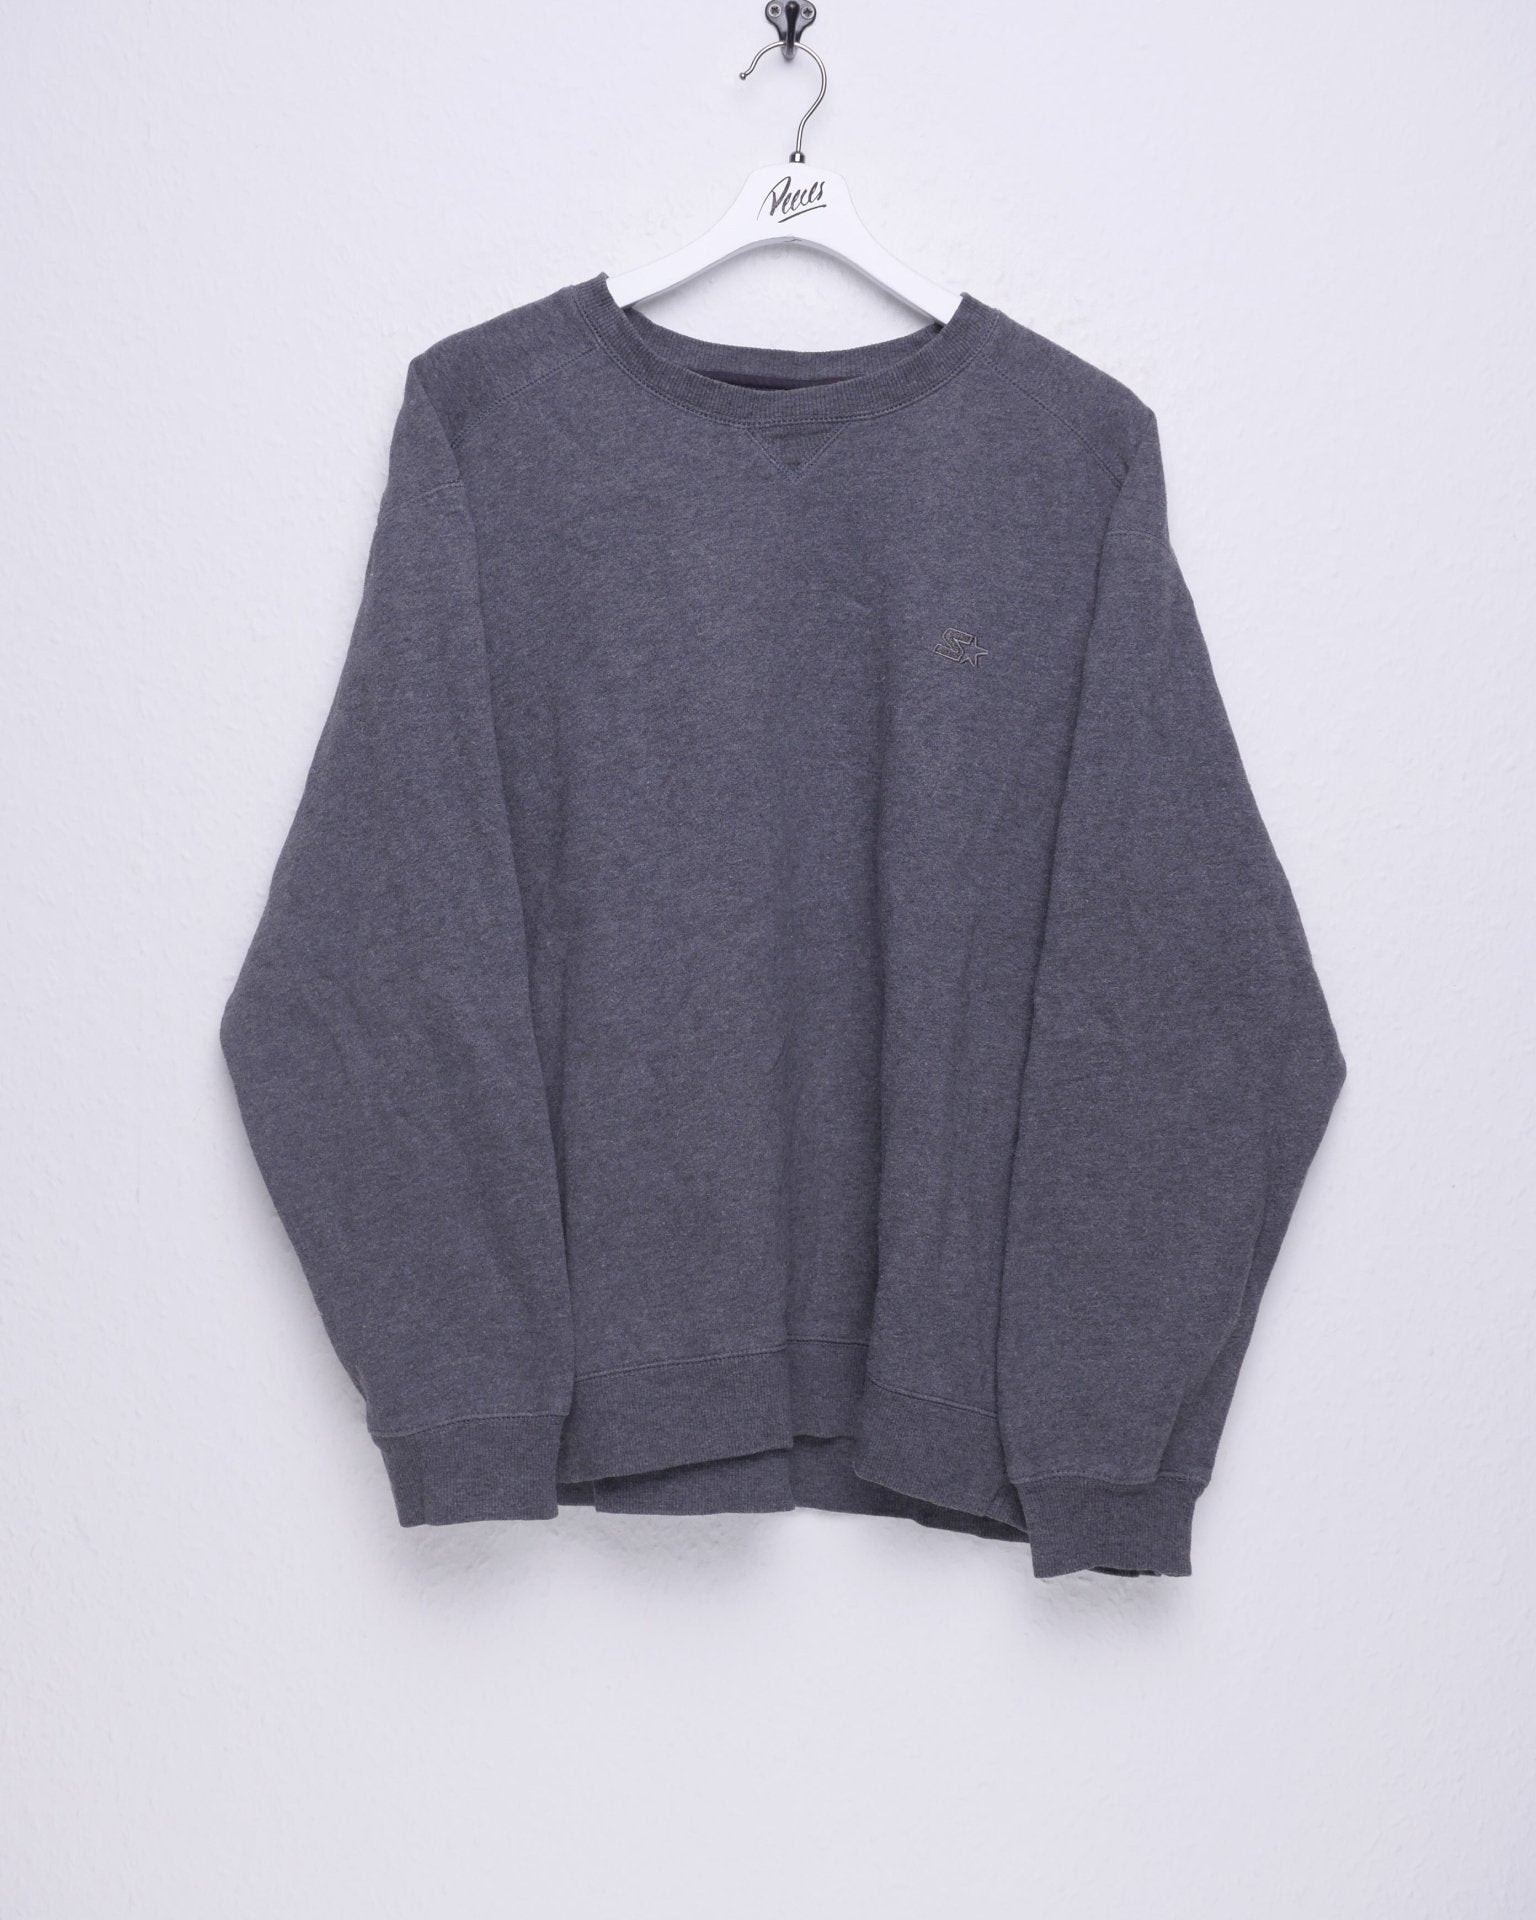 Starter embroidered Logo basic grey oversized Sweater - Peeces